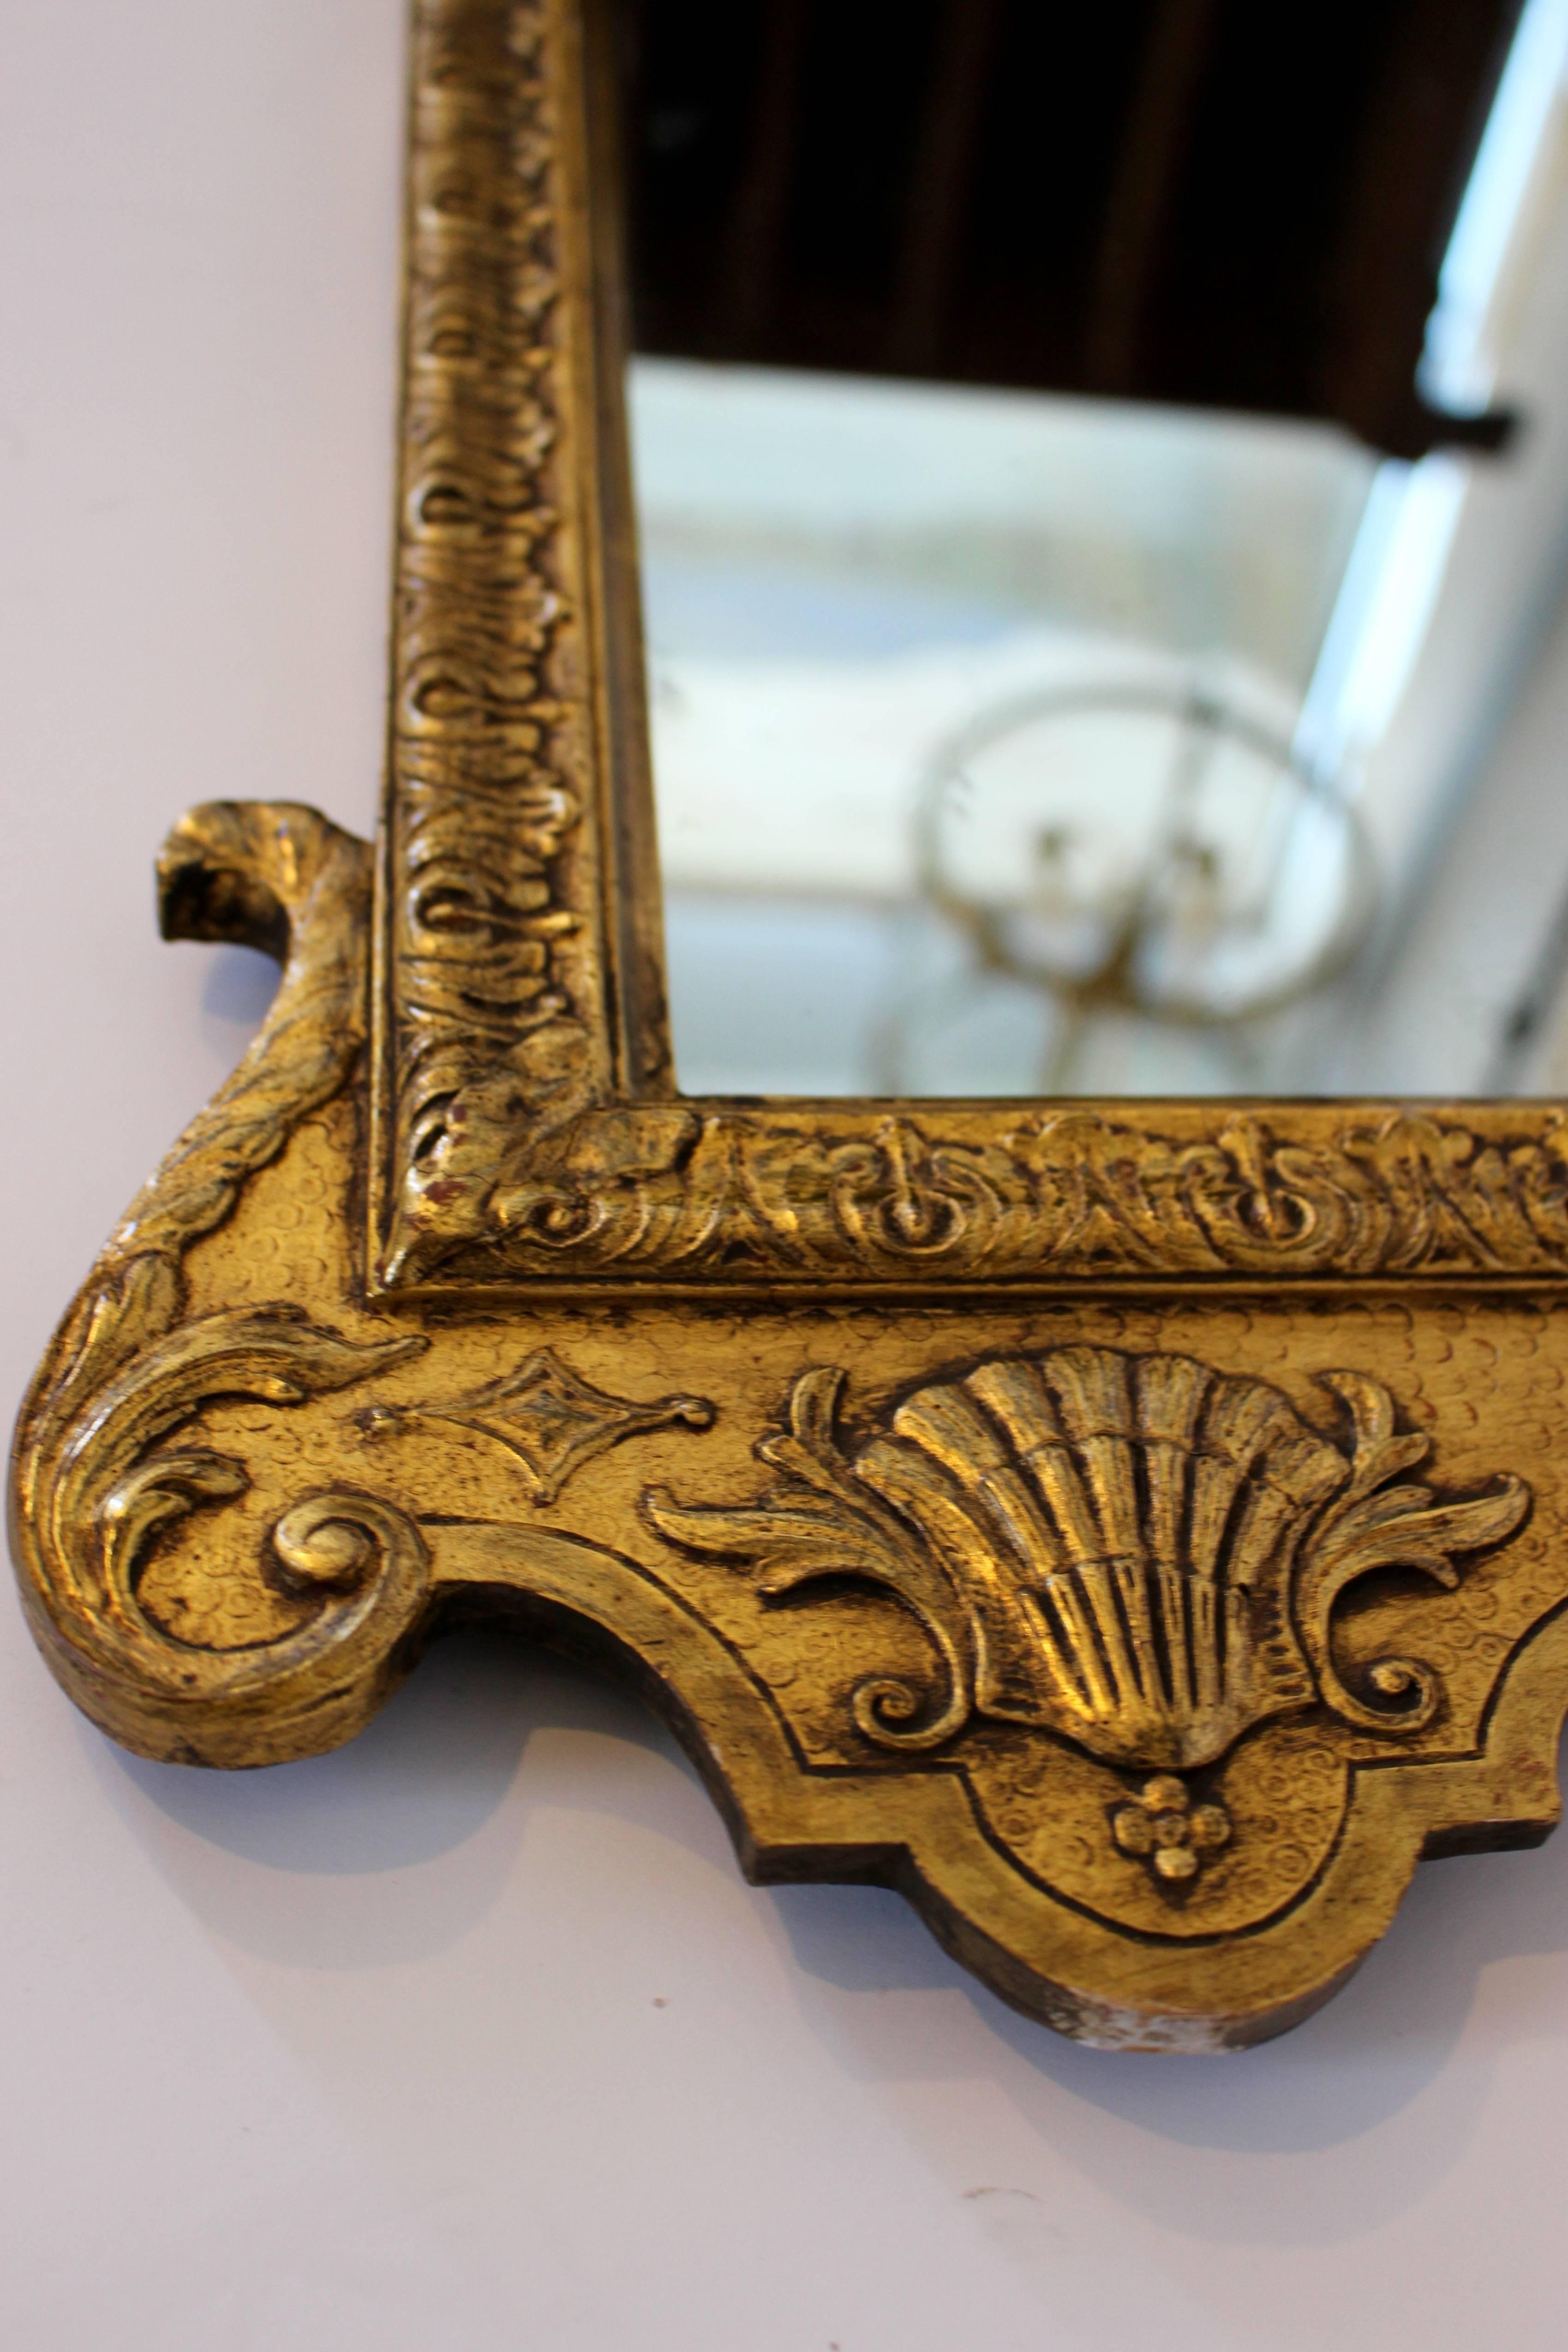 Vergoldeter Spiegel aus dem frühen 18. Jahrhundert mit geschnitztem Dekor und gebrochenem Giebel. Die originale, abgeschrägte, rechteckige Spiegelplatte mit abgerundeten oberen Ecken befindet sich in einem vergoldeten Rahmen mit geschnitztem